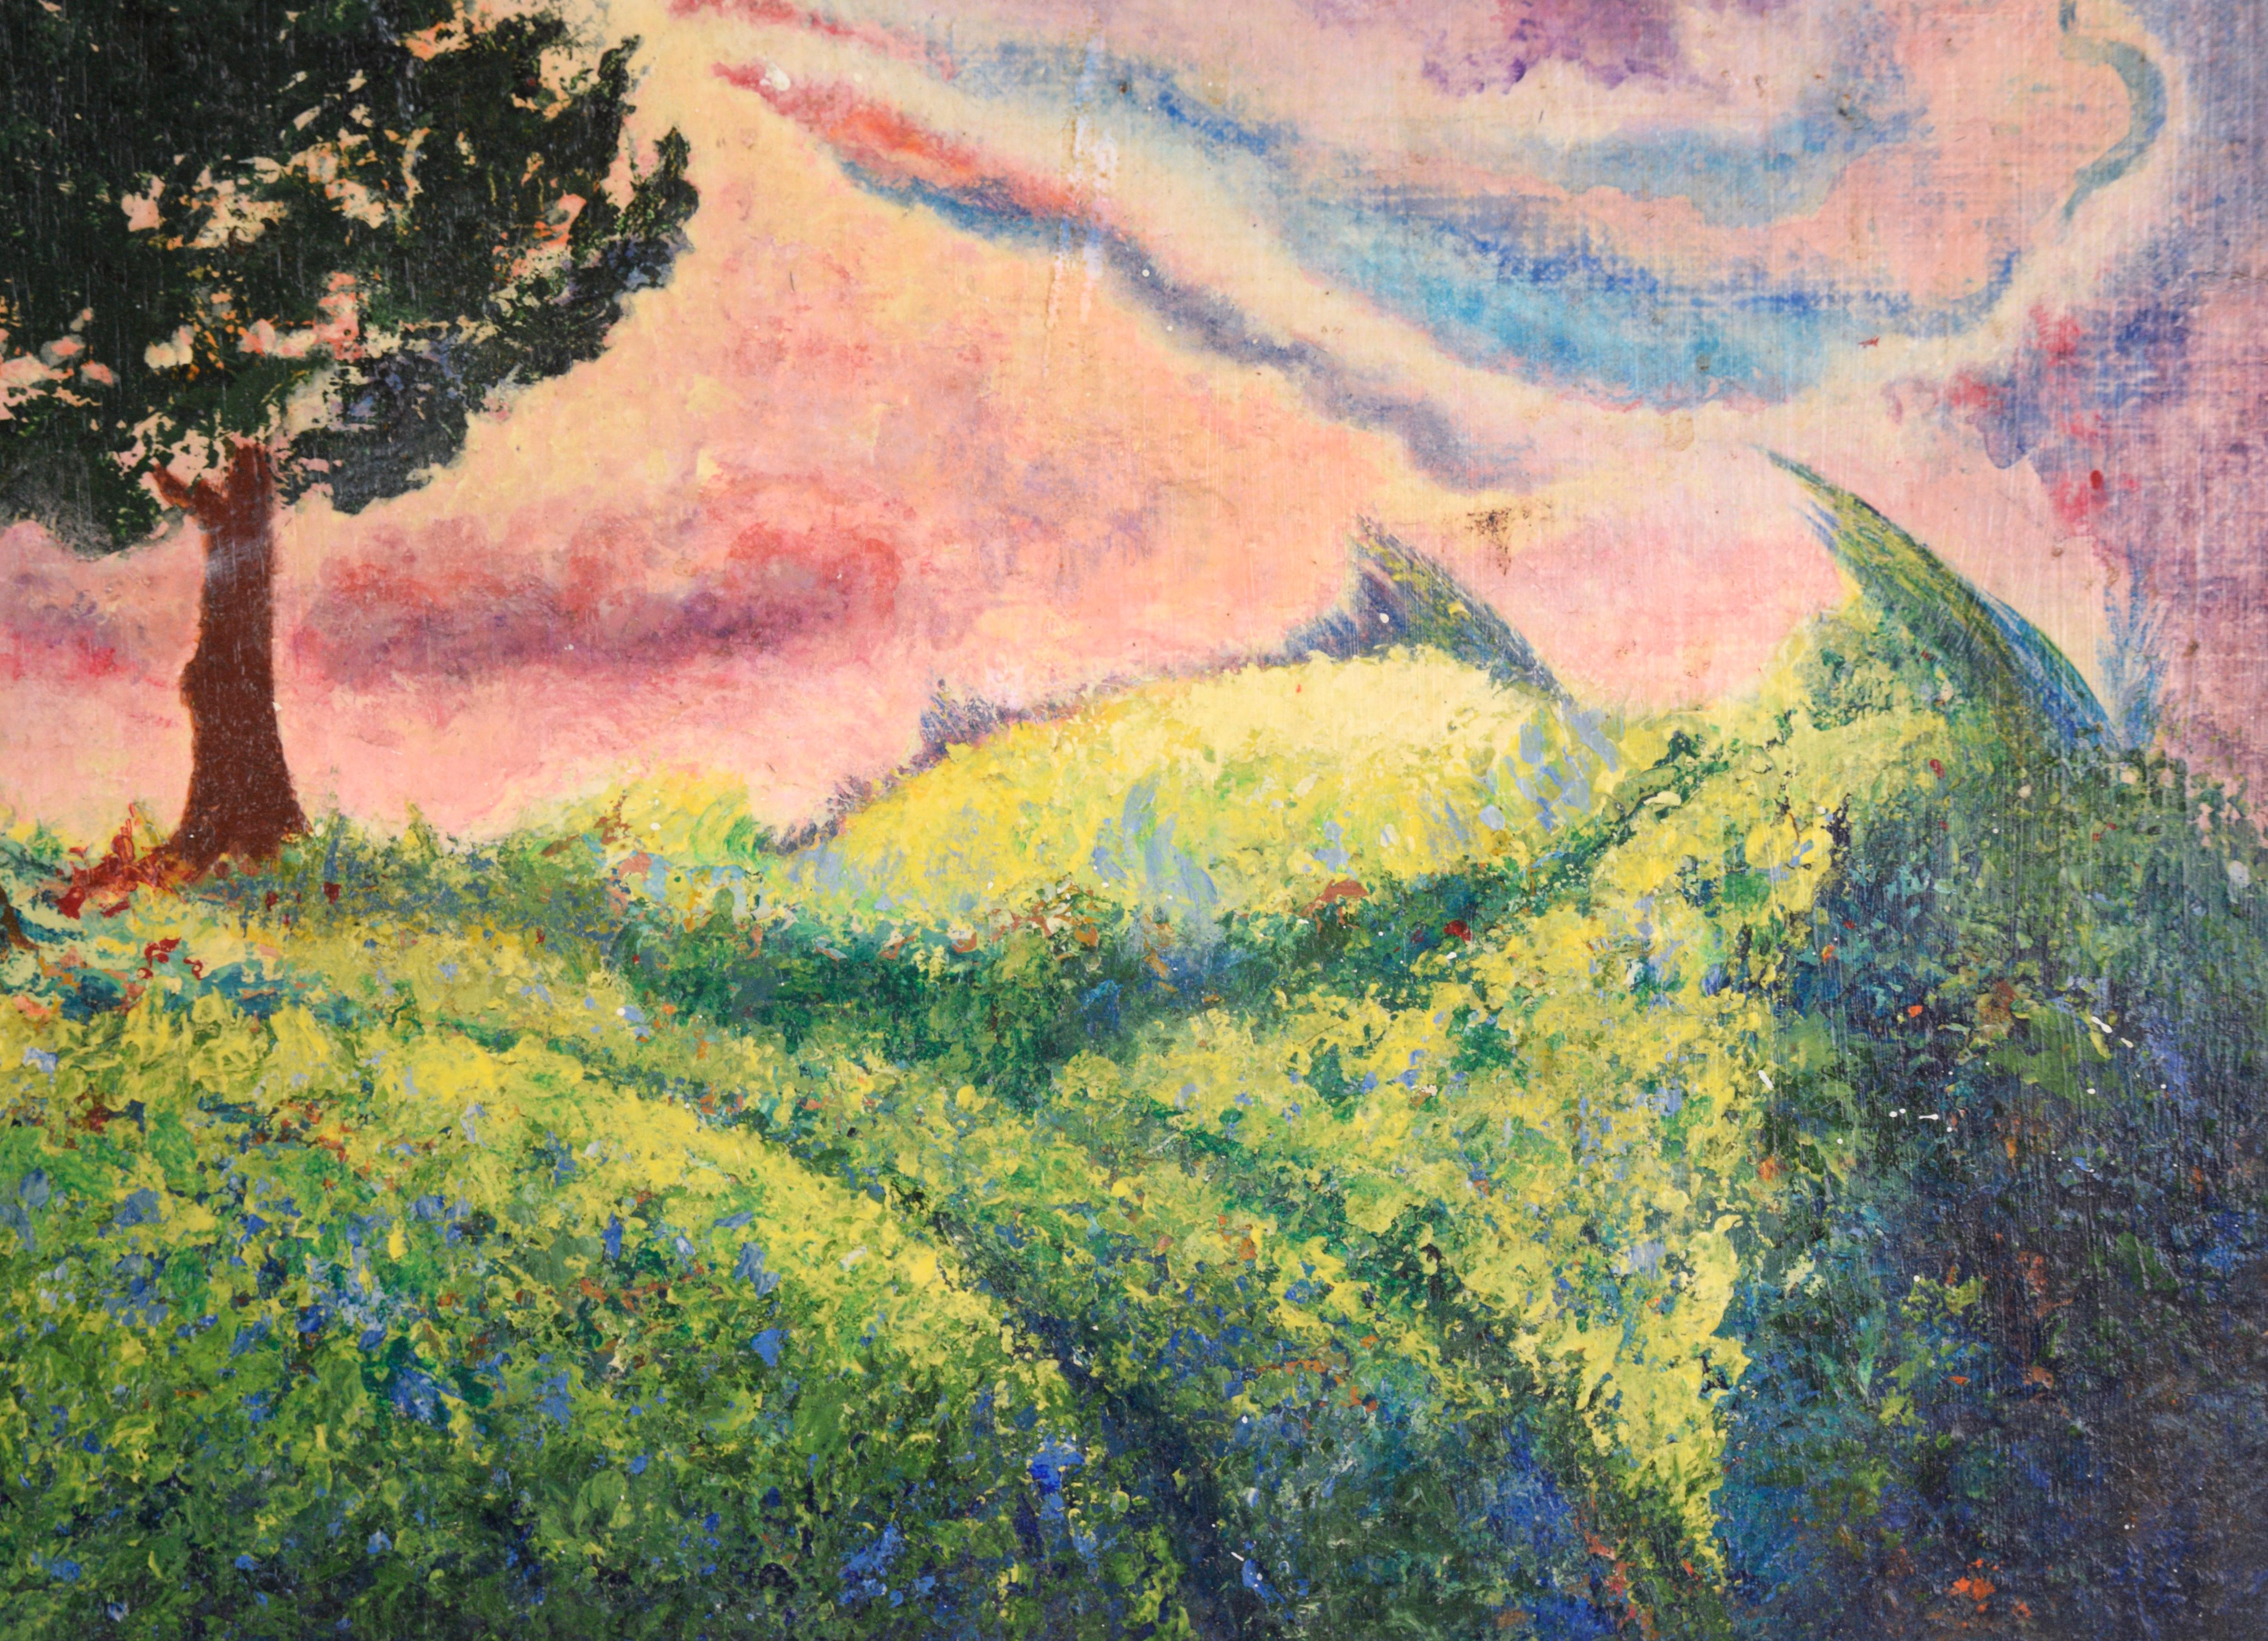 Lebendige Landschaft mit einer Baumgruppe von H. W. Shankle (20. Jahrhundert). Die Bäume, die Wolken und der Boden werden durcheinander gewirbelt, als ob sie durch die Perspektive des Betrachters verzerrt würden, was der Komposition ein